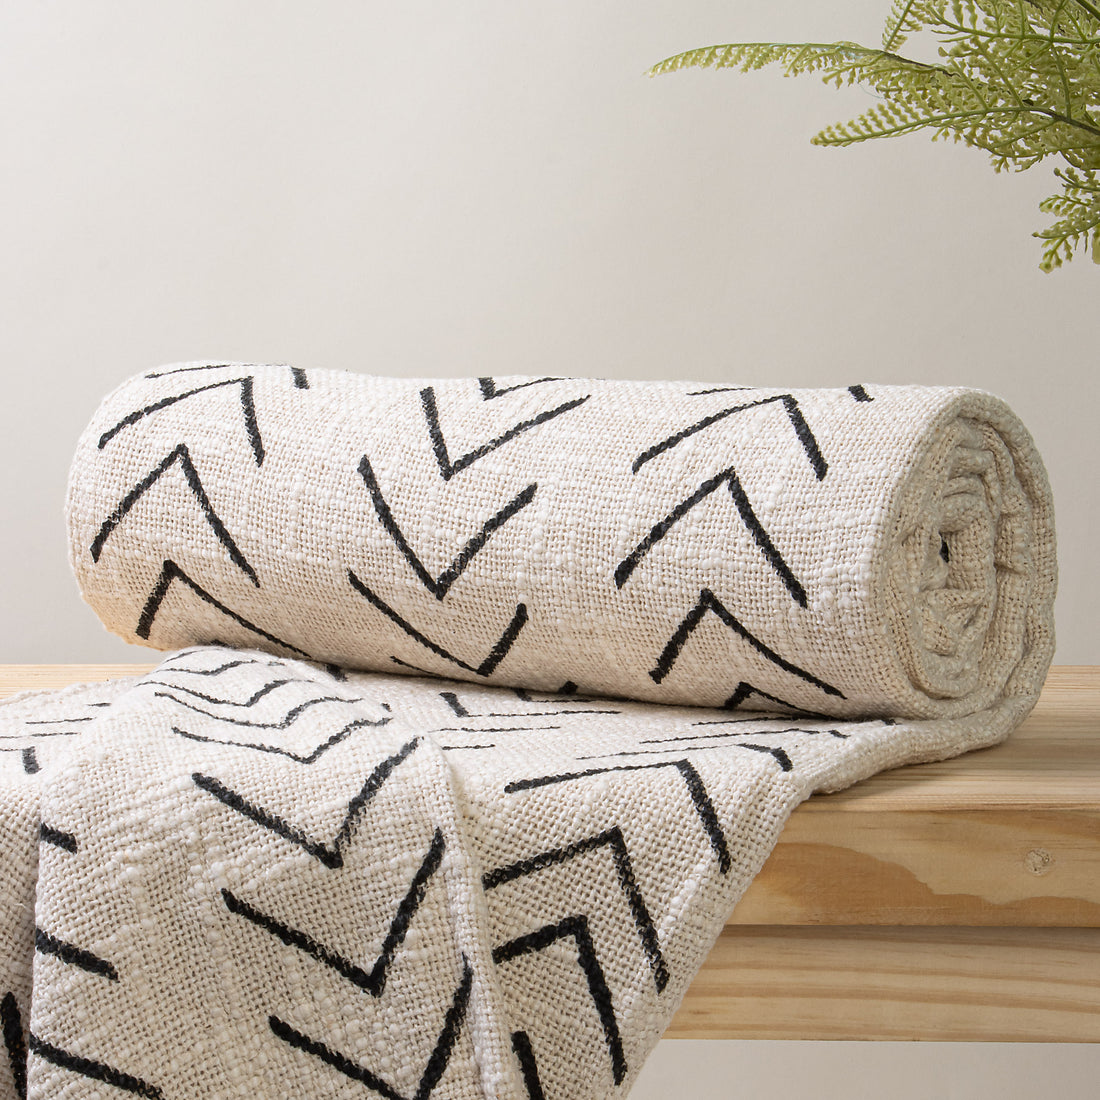 Black Stripes Print Throw Blanket For Living Room Decor Online